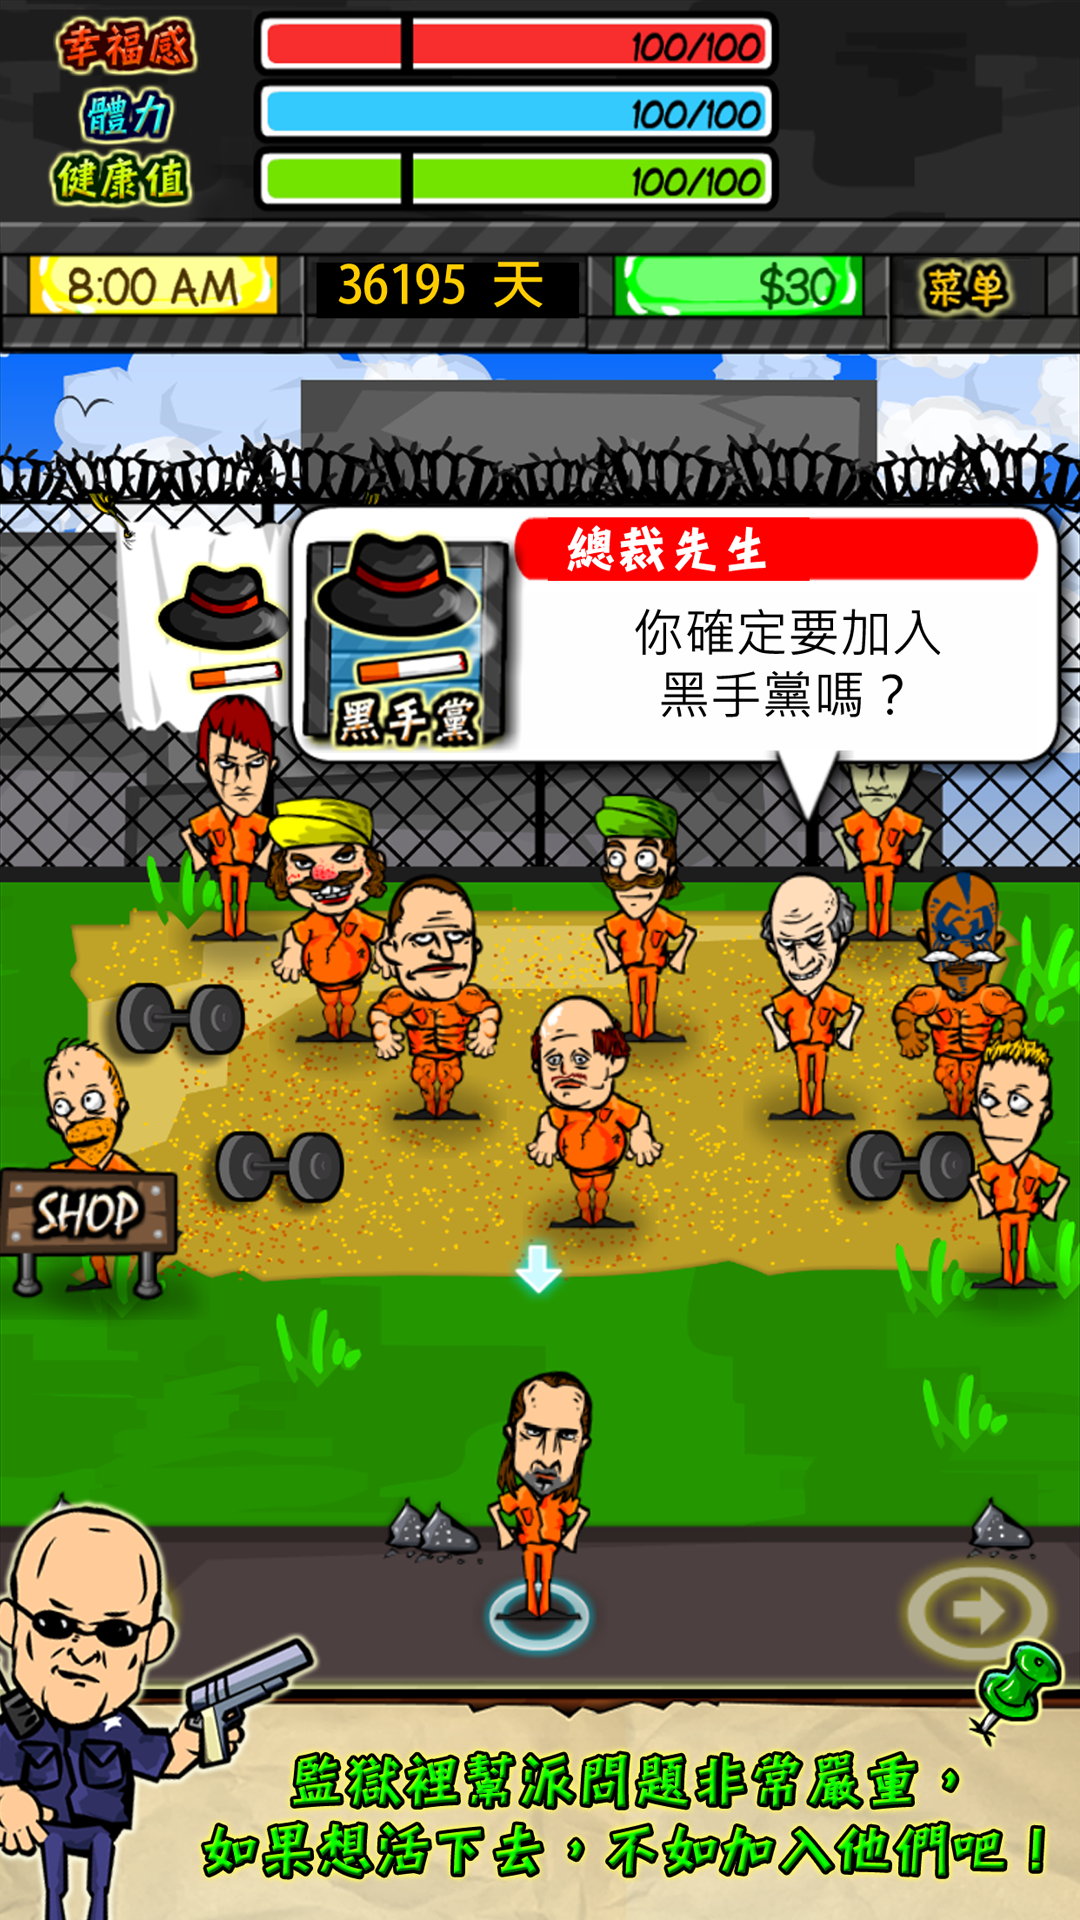 監獄人生 RPG遊戲截圖